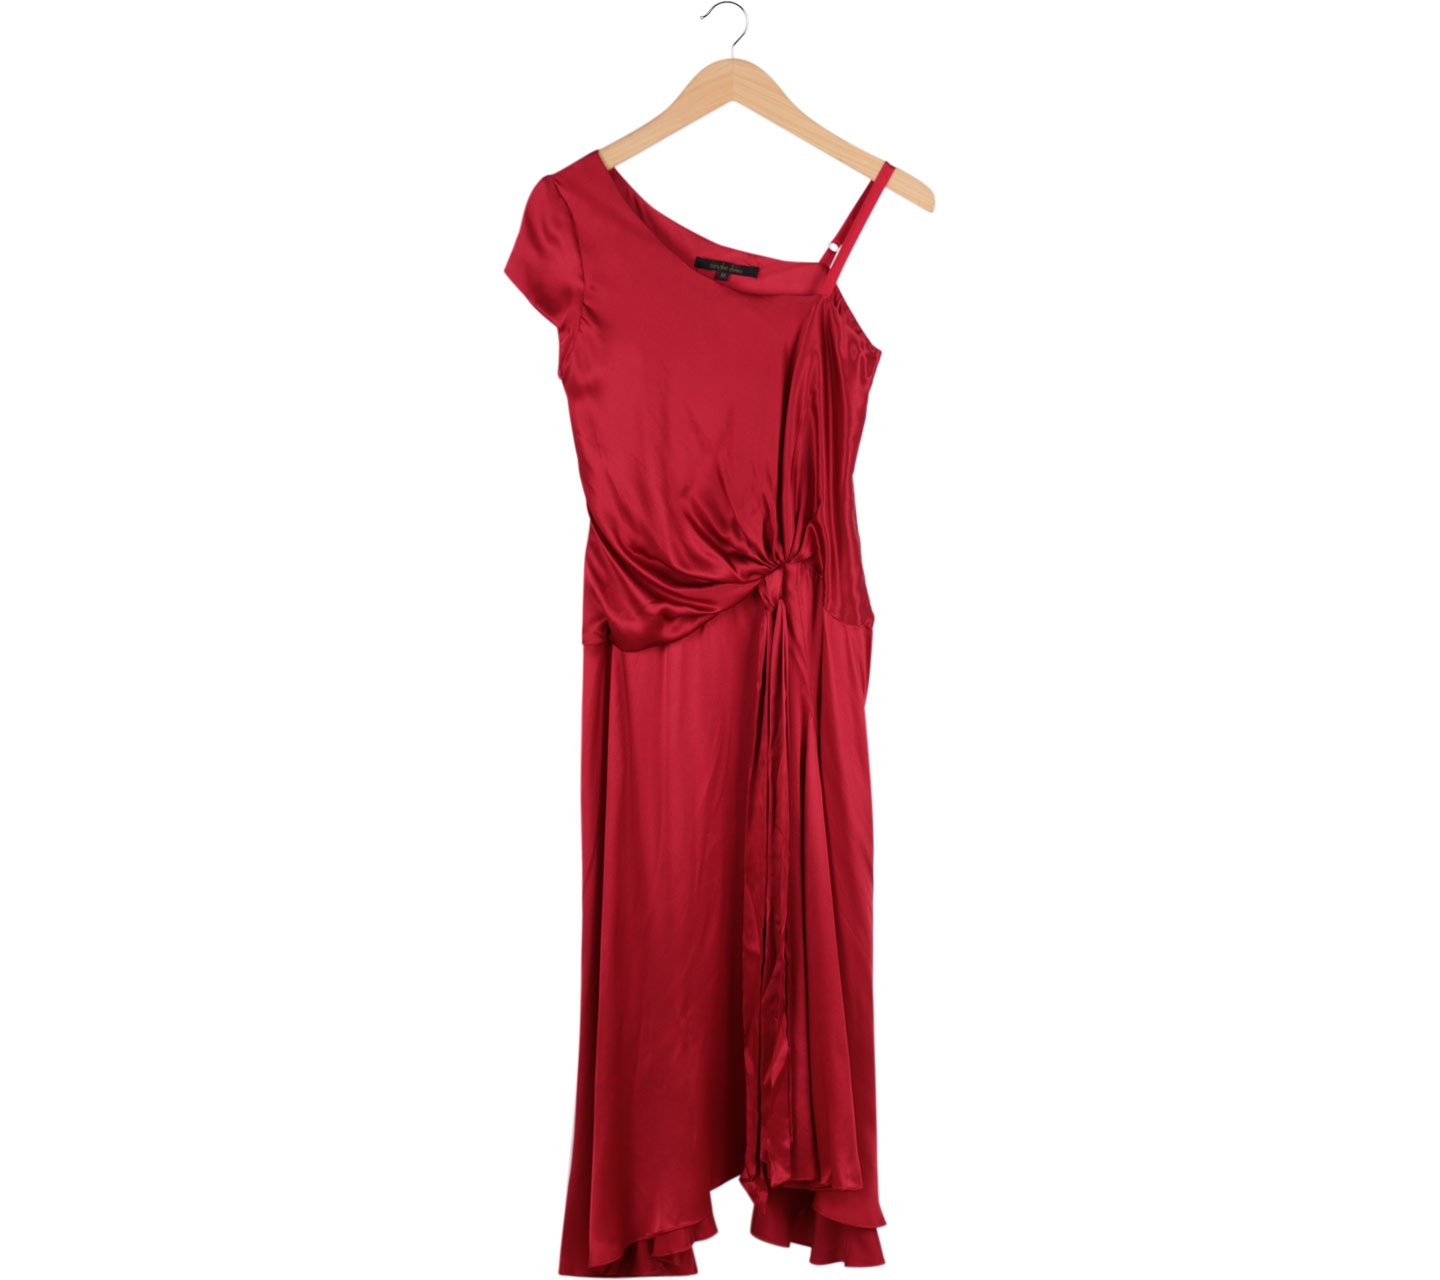 Single Dress Red One Shoulder Long Dress